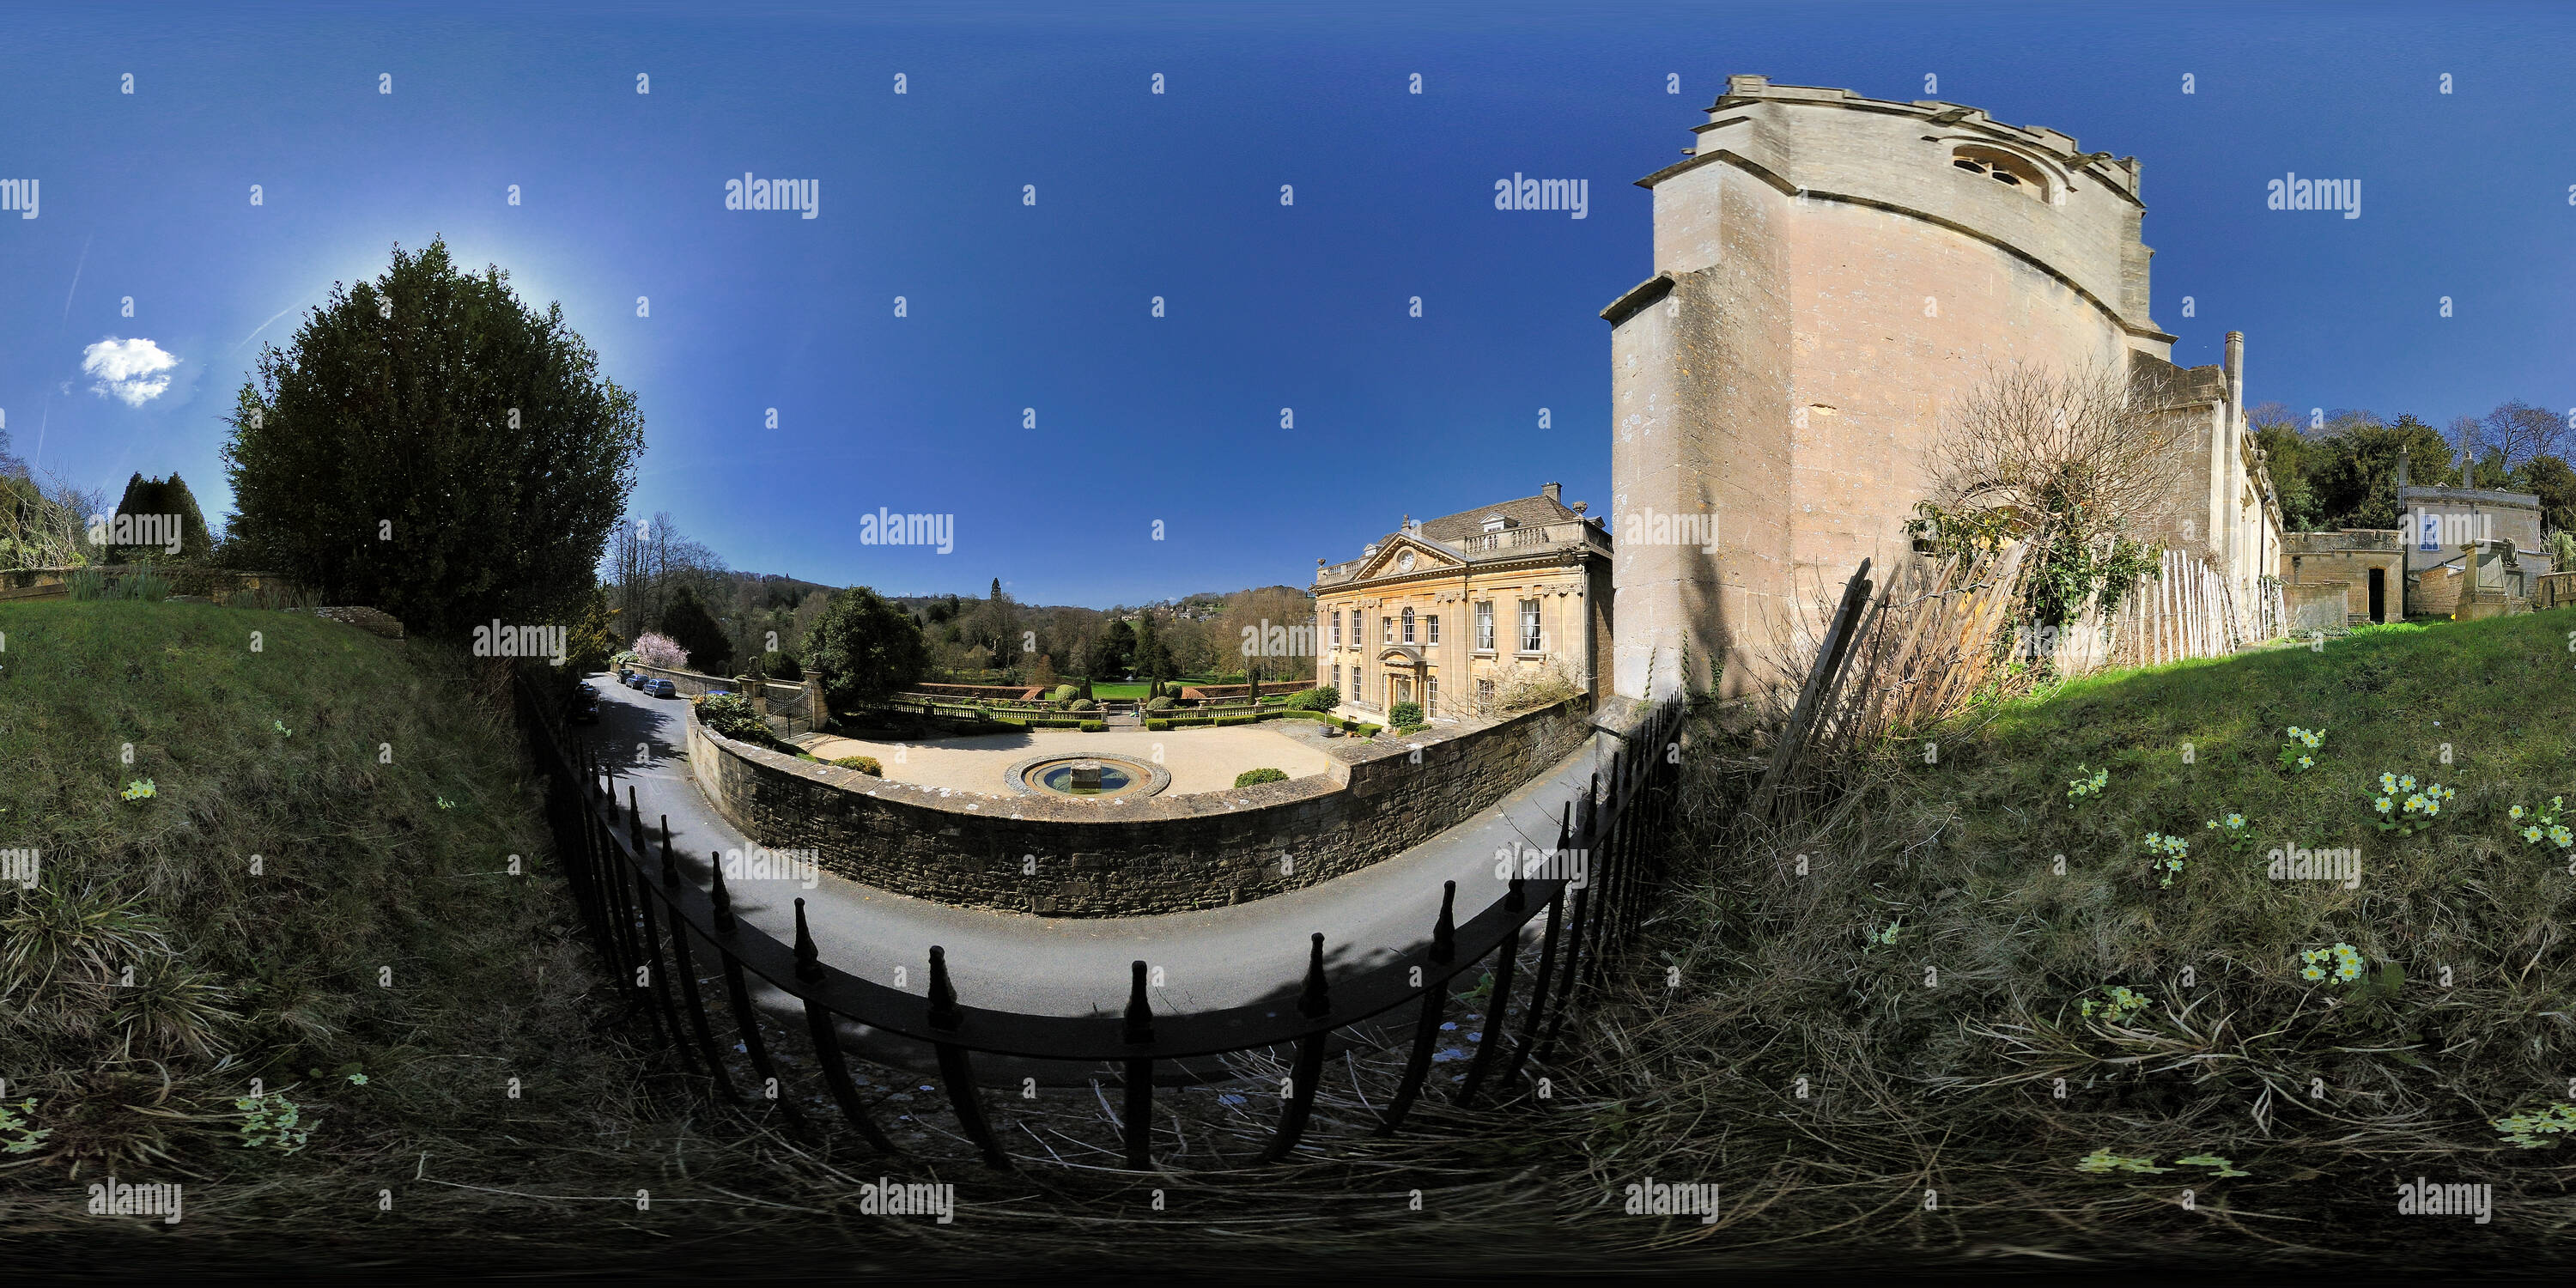 Visualizzazione panoramica a 360 gradi di Widcombe Manor, la Casa Dorata. Widcombe, bagno. VR